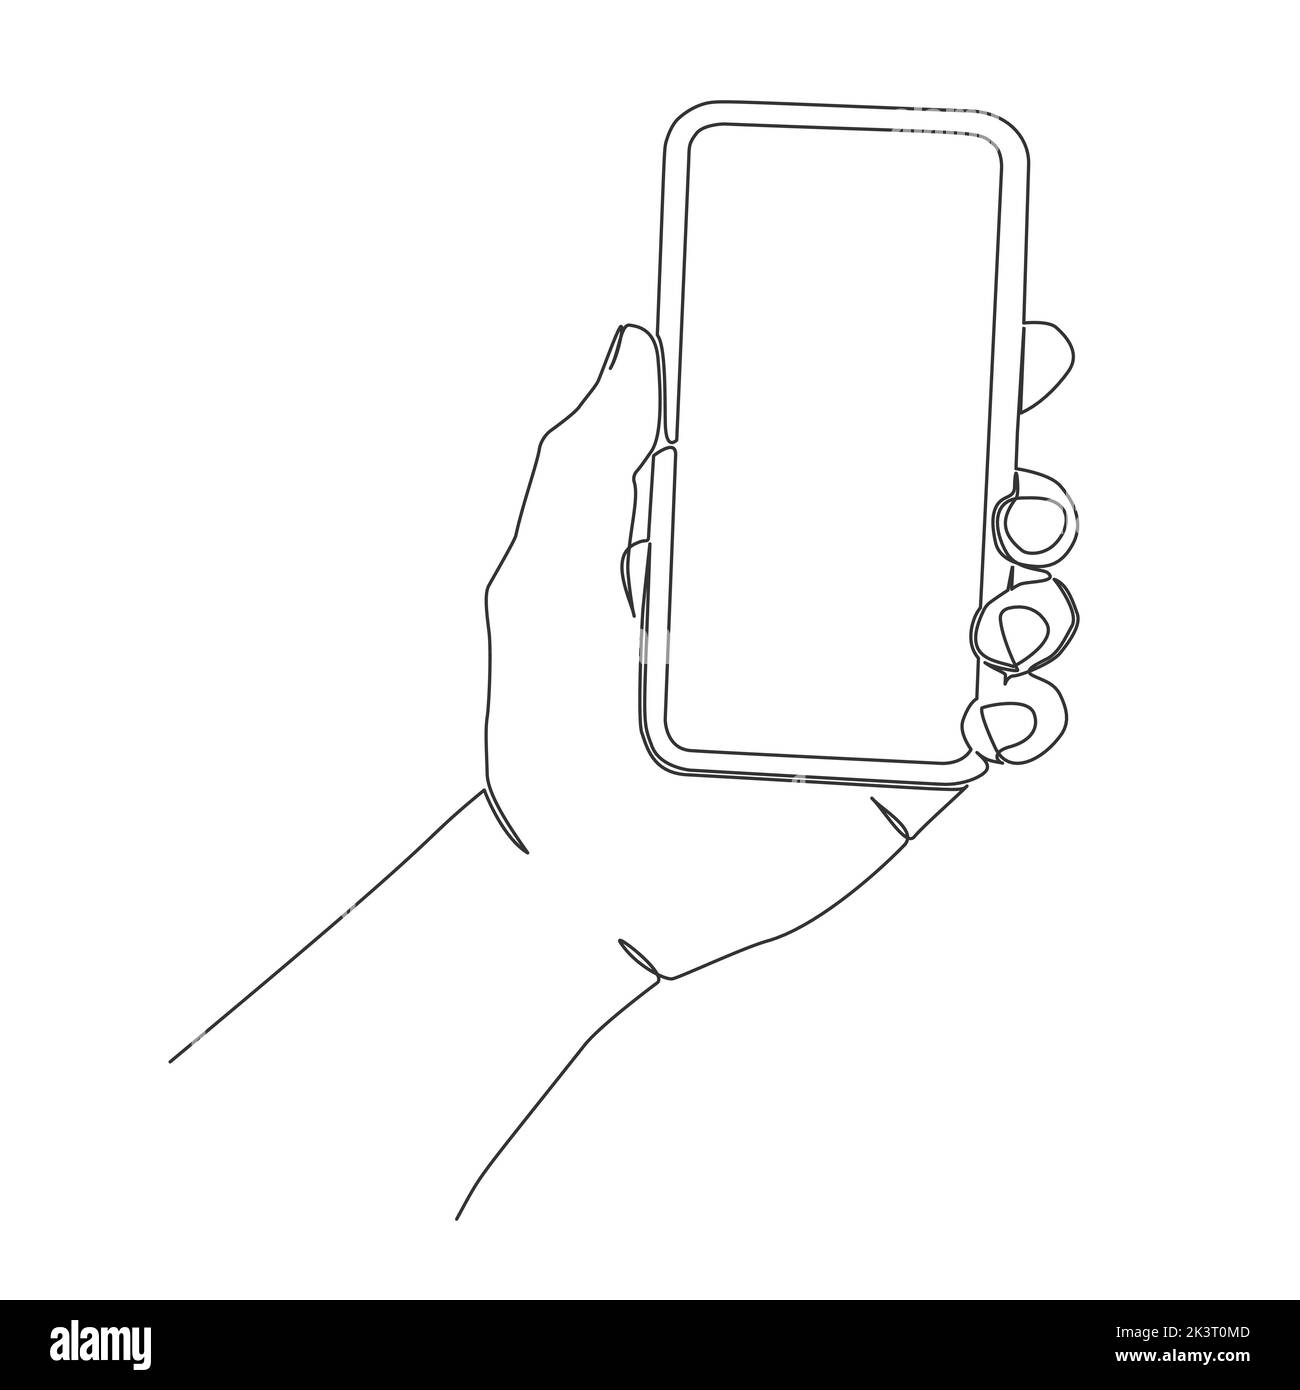 Eine Linie Zeichnung der Hand halten Smartphone isoliert auf weißem Hintergrund, Linie Art Vektor-Illustration Stock Vektor